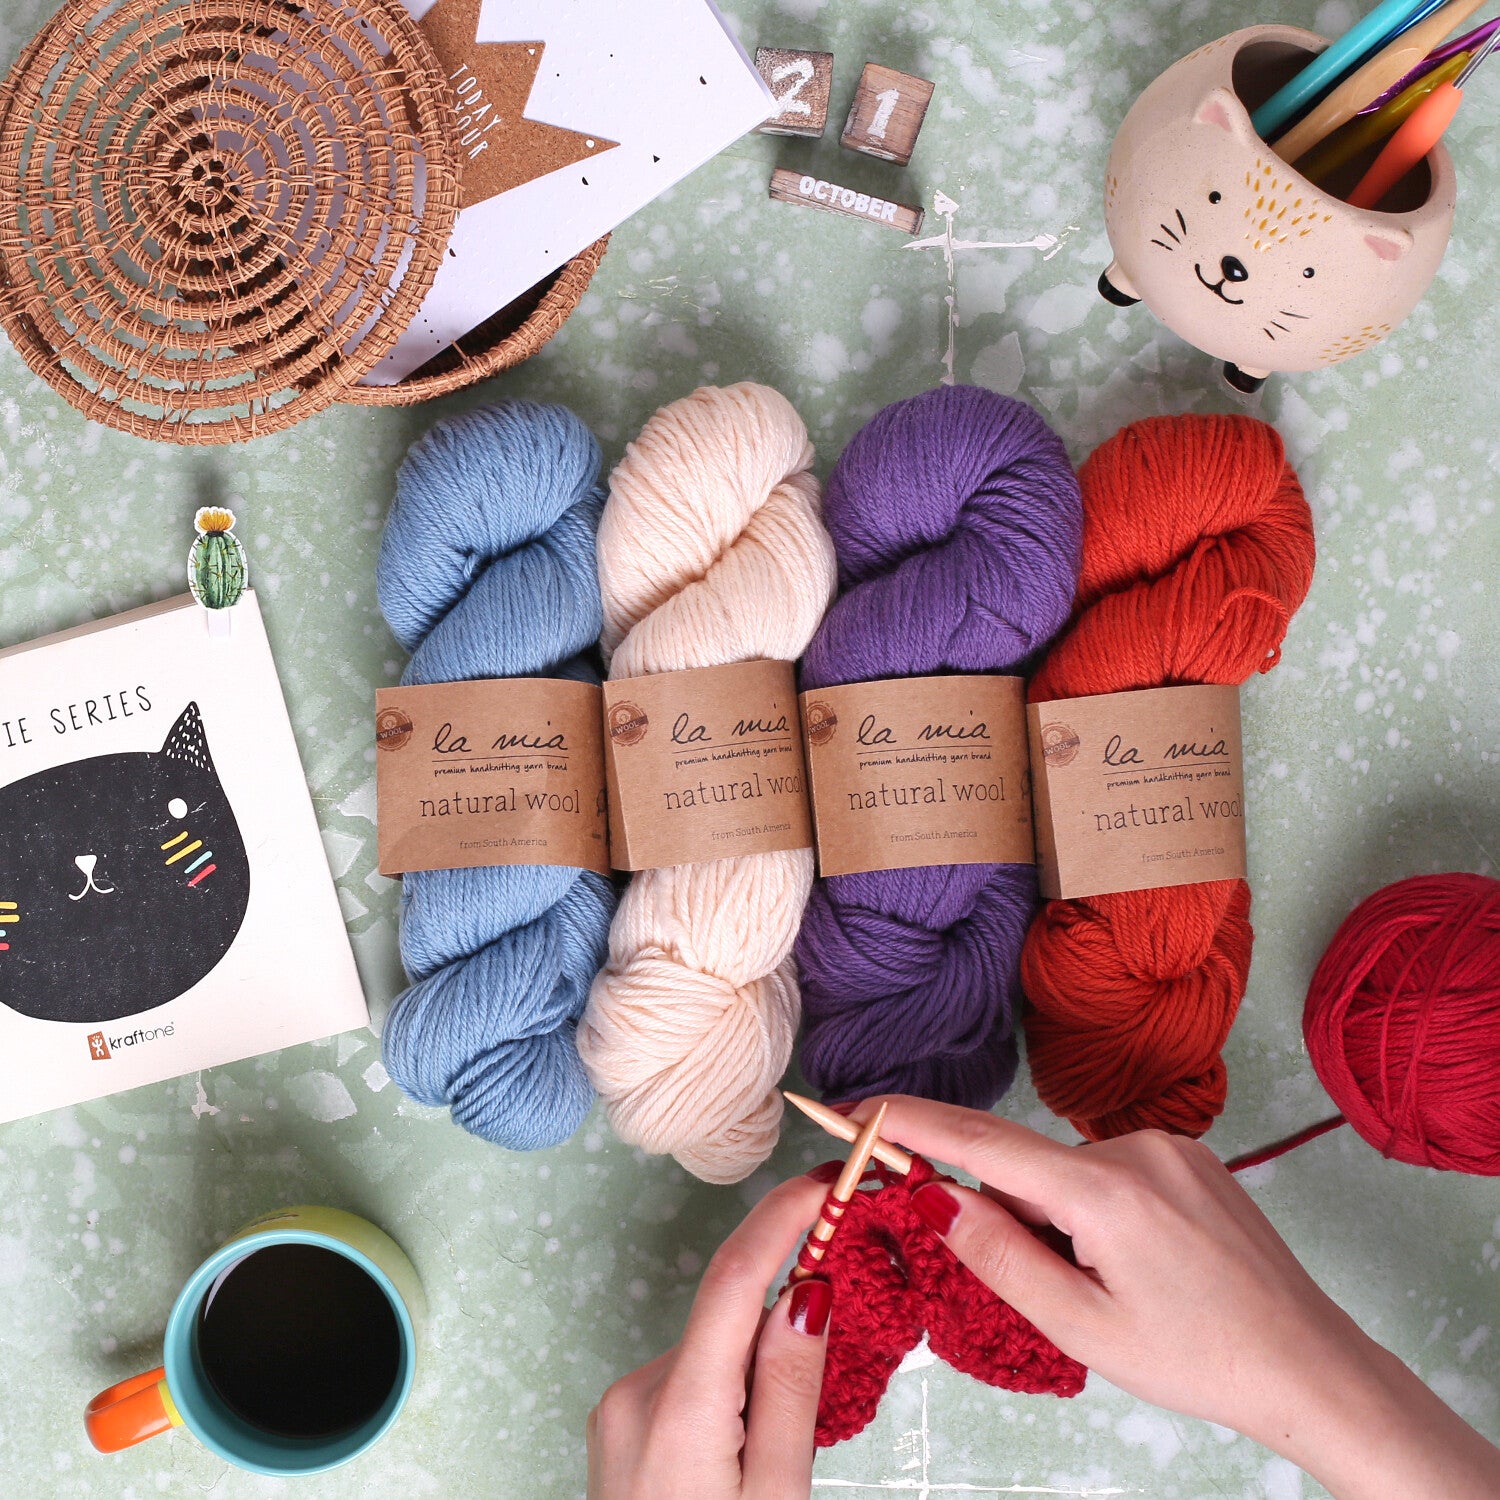 La Mia Natural Wool Knitting Yarn Brown - L205